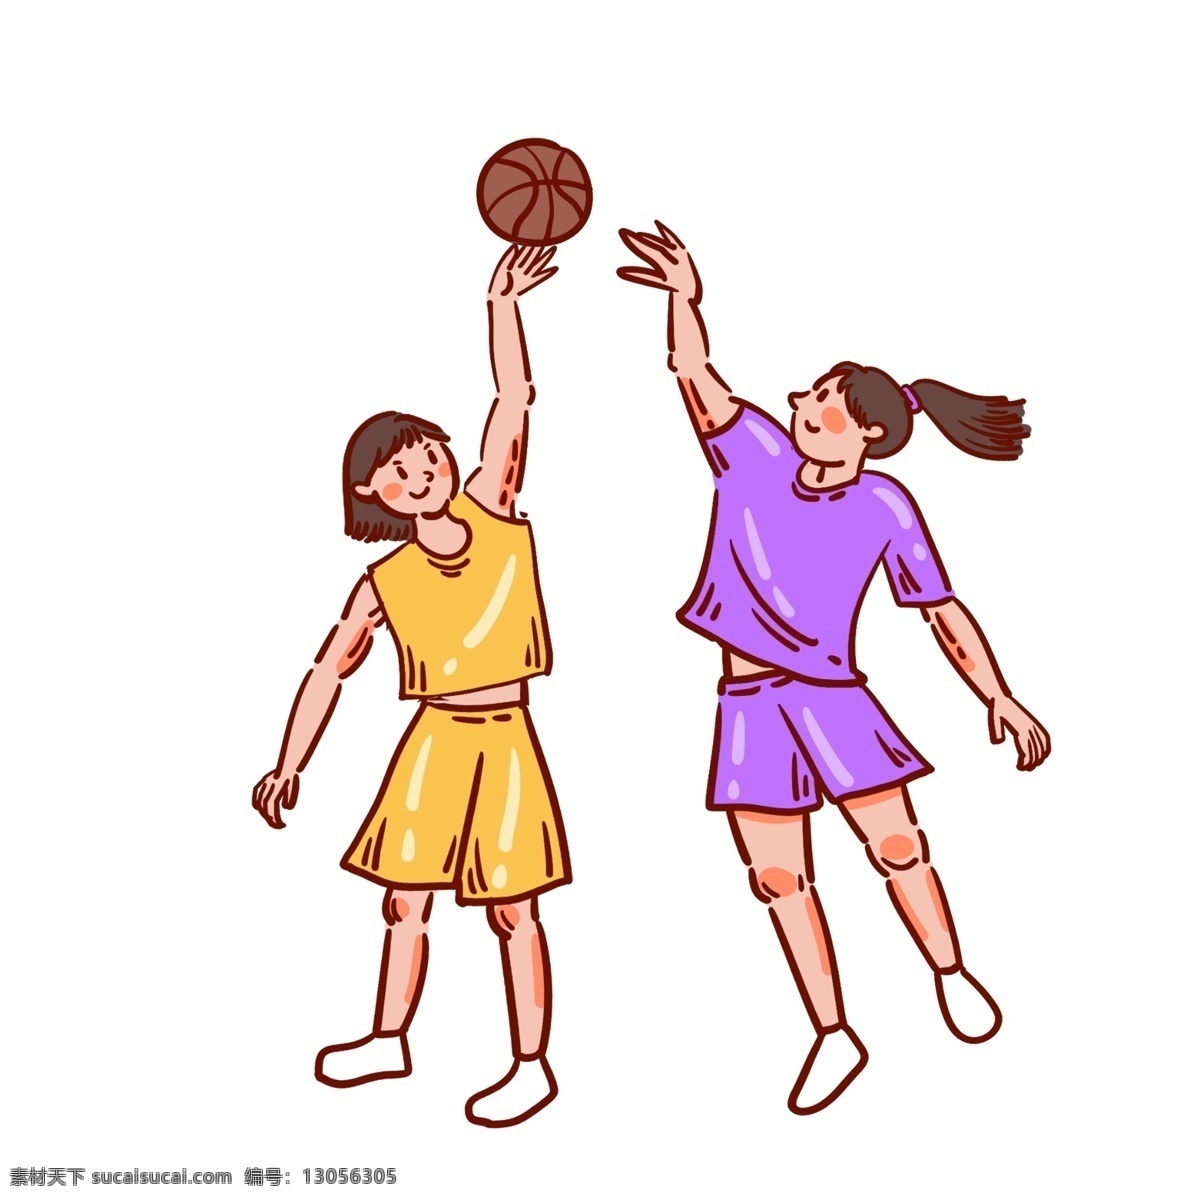 卡通 矢量 免 抠 可爱 篮球 人物 免抠 打篮球 女生 黄色 紫色 篮球衣 小白鞋 运动 夏季 快乐 开心 短发 马尾 运球